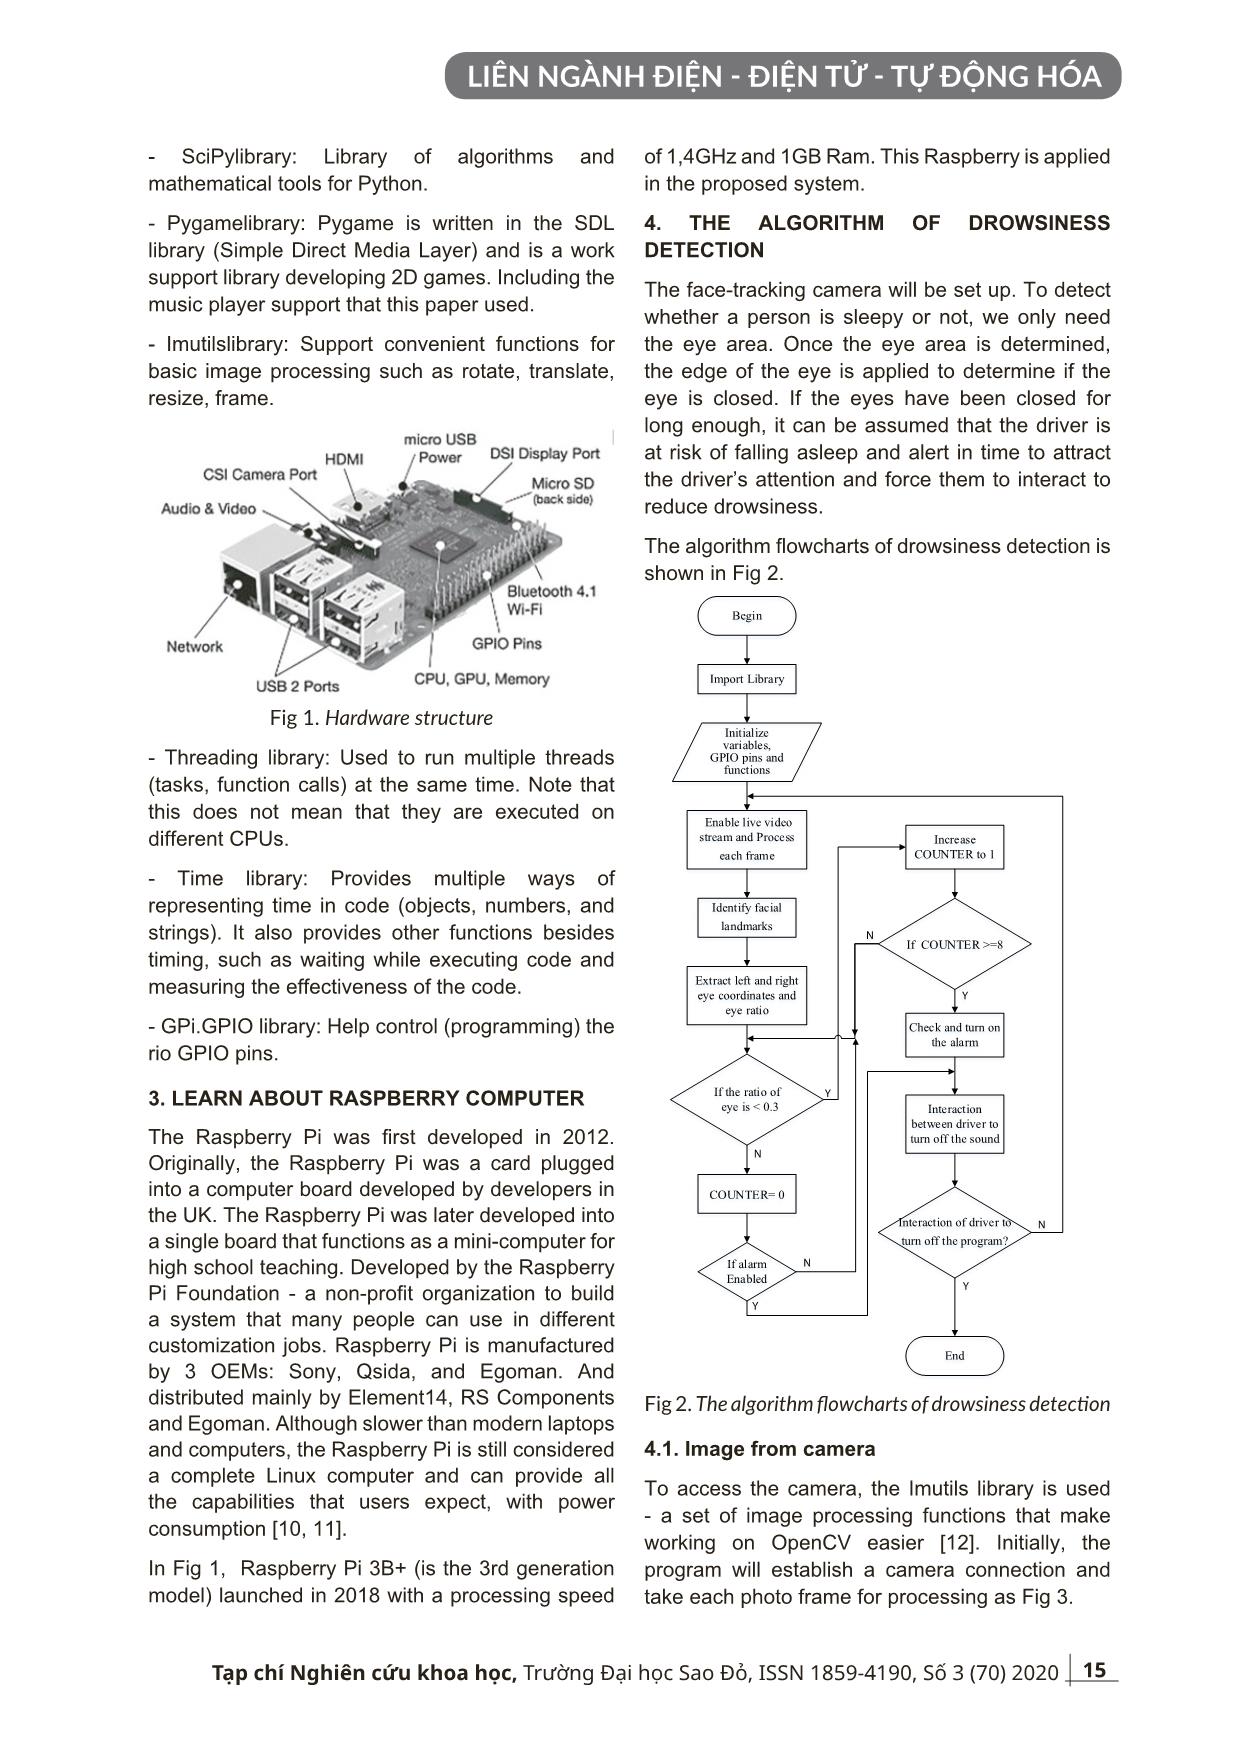 Một hệ thống chống ngủ gật cho các lái xe sử dụng Raspberry trang 3